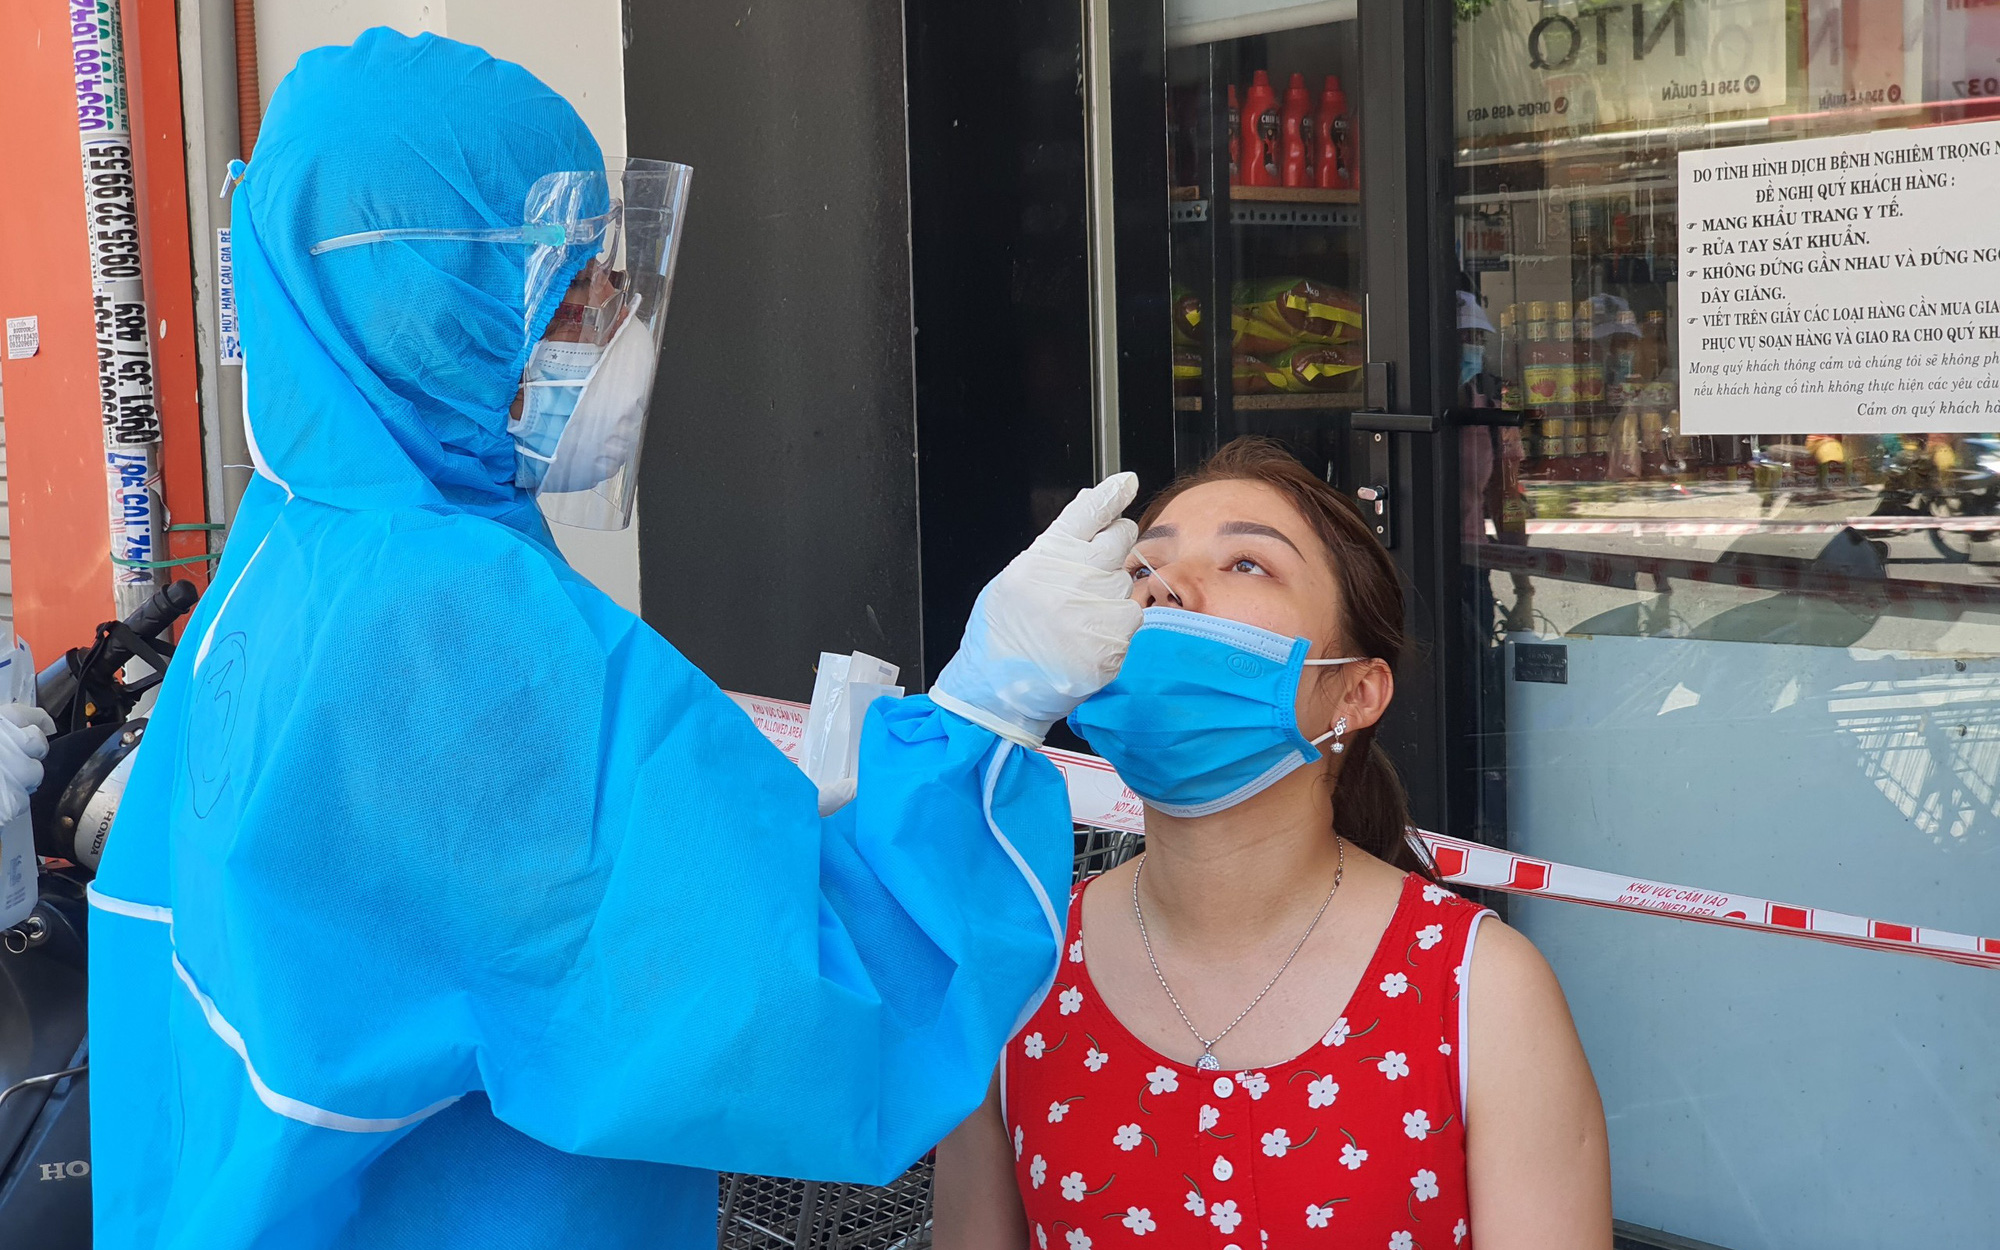 Sở Y tế Đà Nẵng thông báo những địa điểm có yếu tố dịch tễ, liên quan đến 3 mẹ con phòng khám nha khoa dương tính với SARS-CoV-2